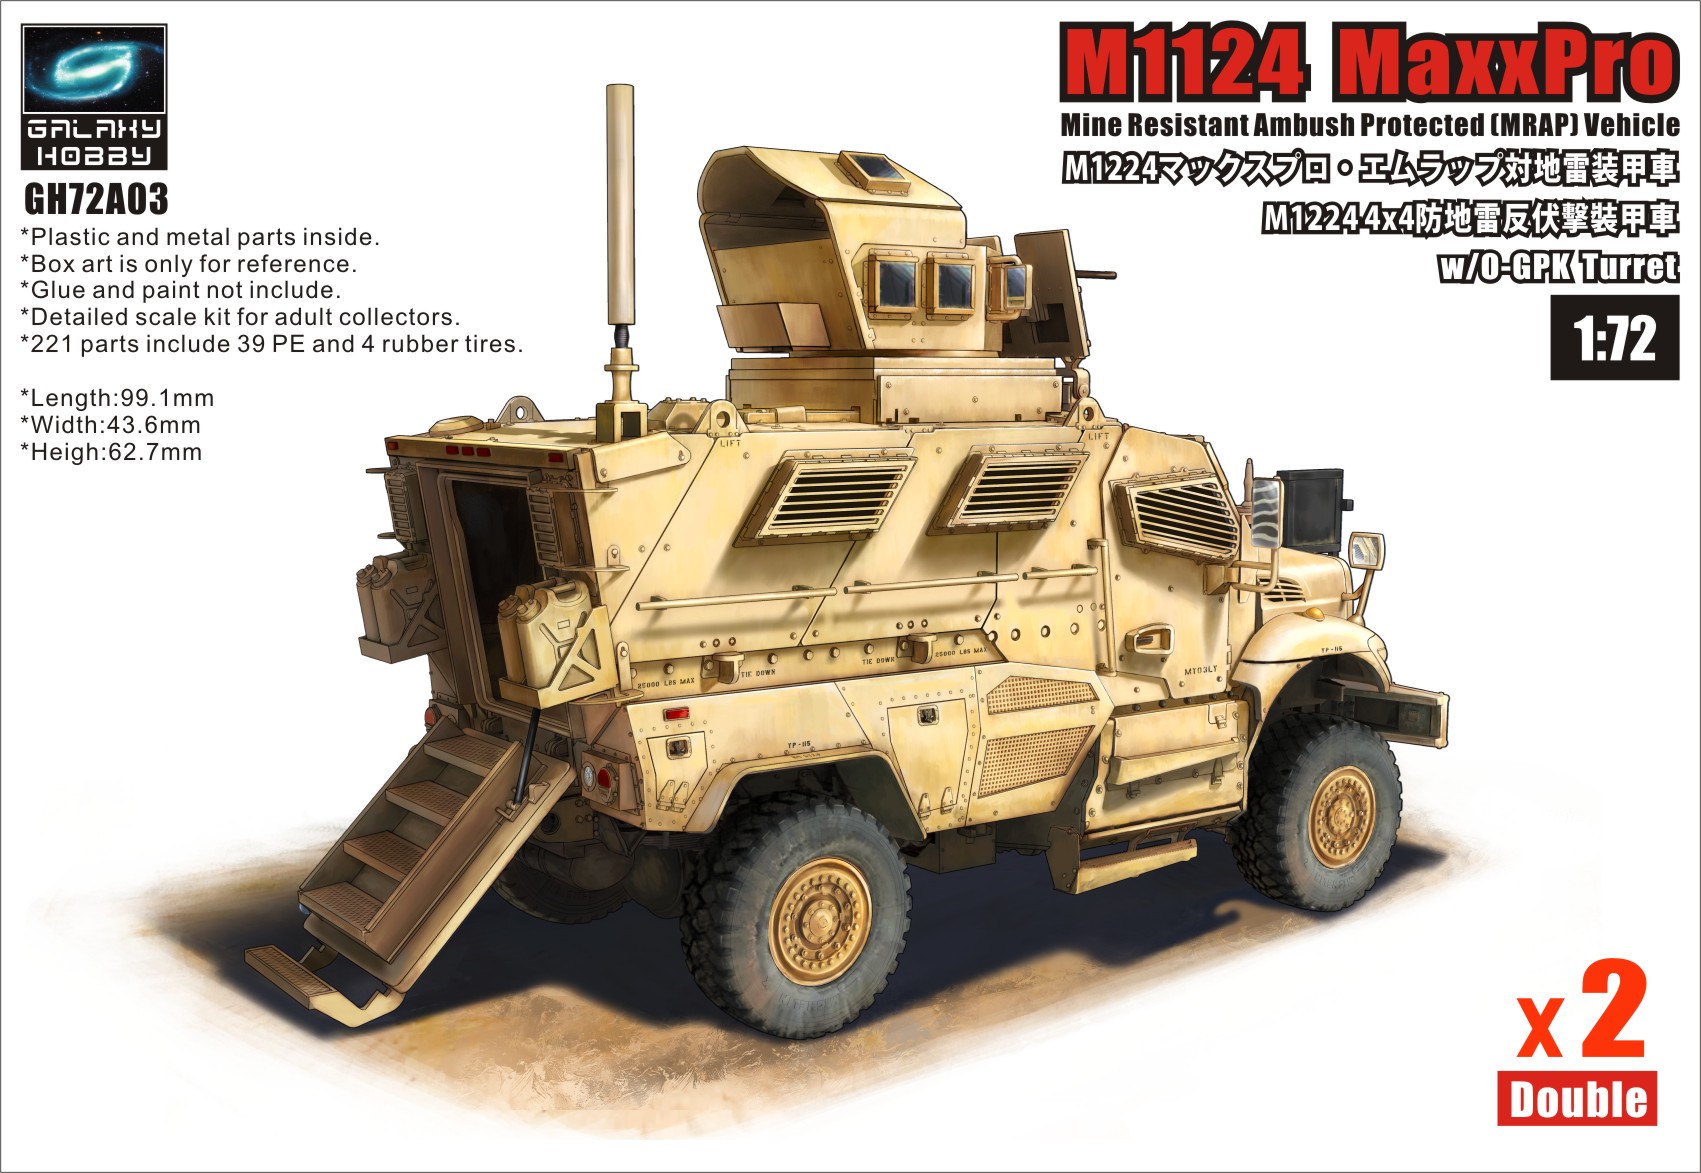 M1224 Maxx Pro MRAP with OGPK turret